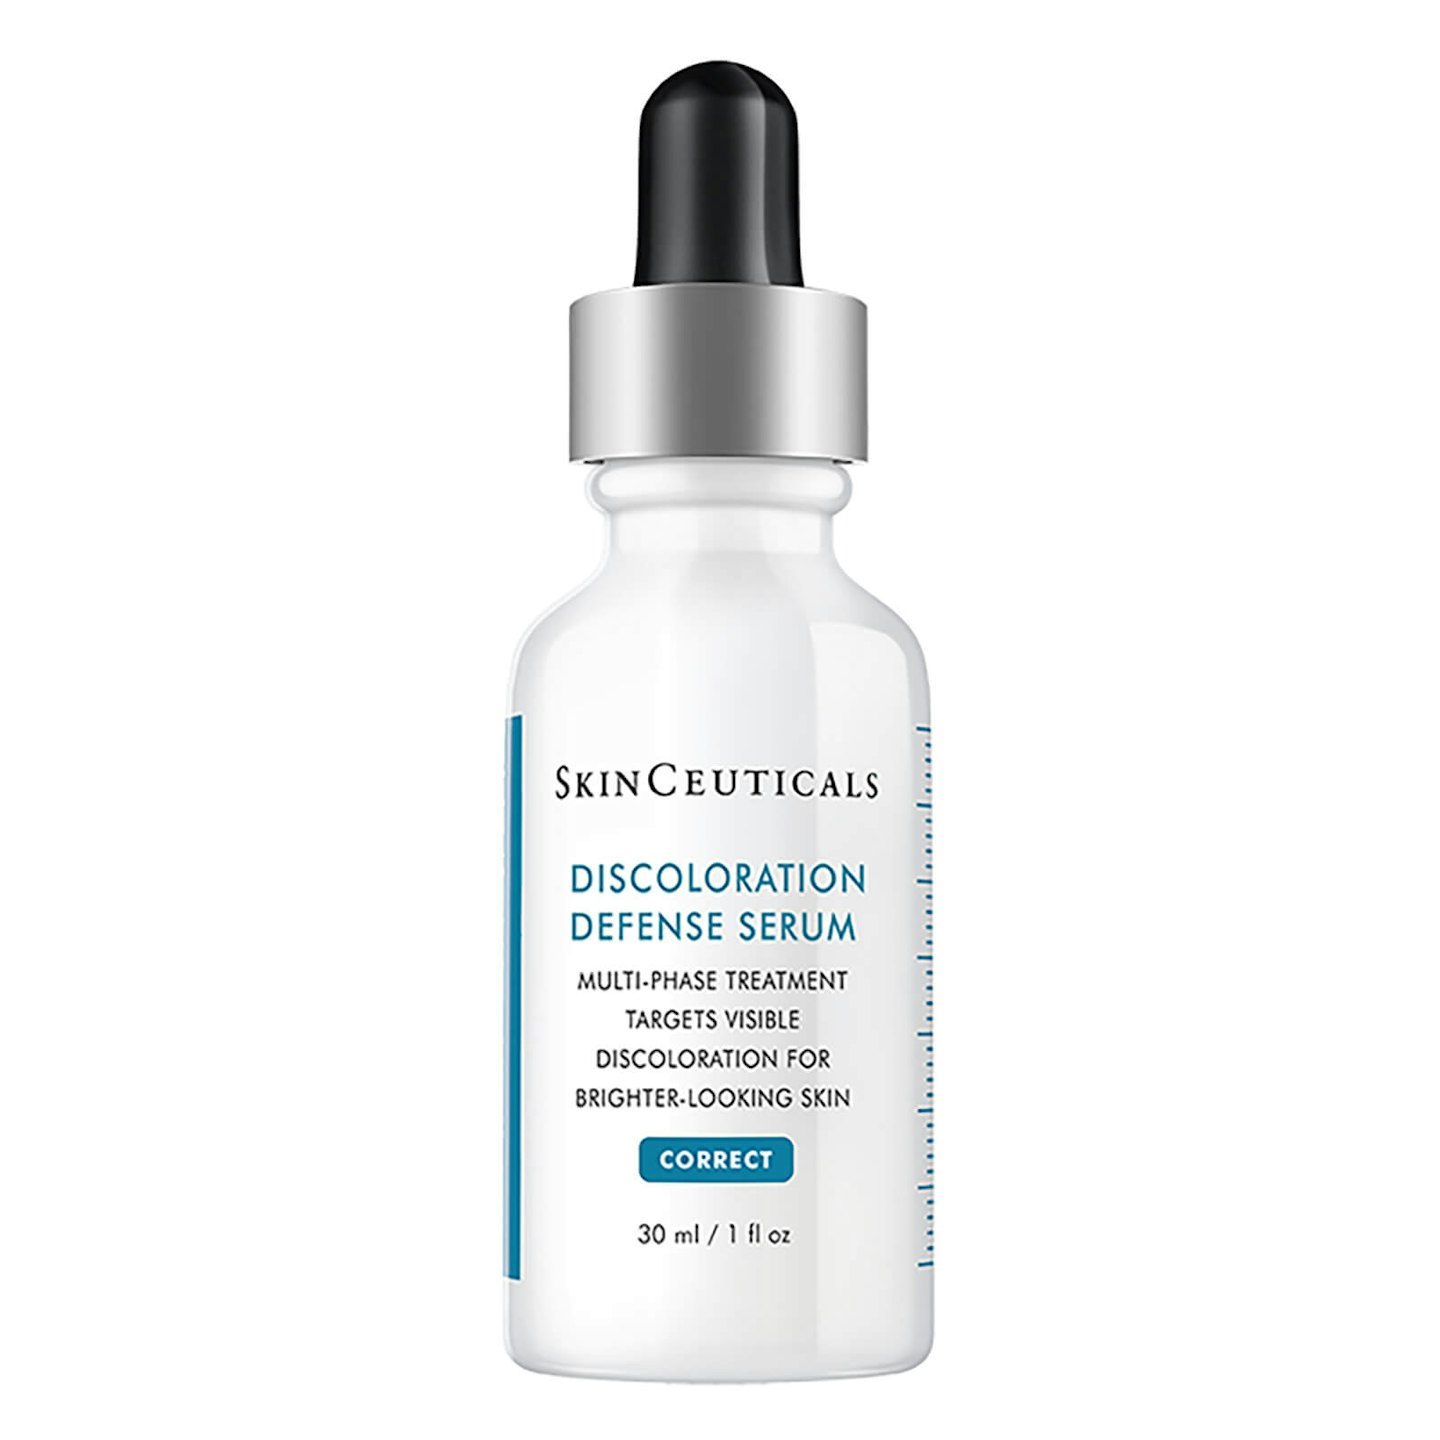 SkinCeuticals Discoloration Defense Serum, £85